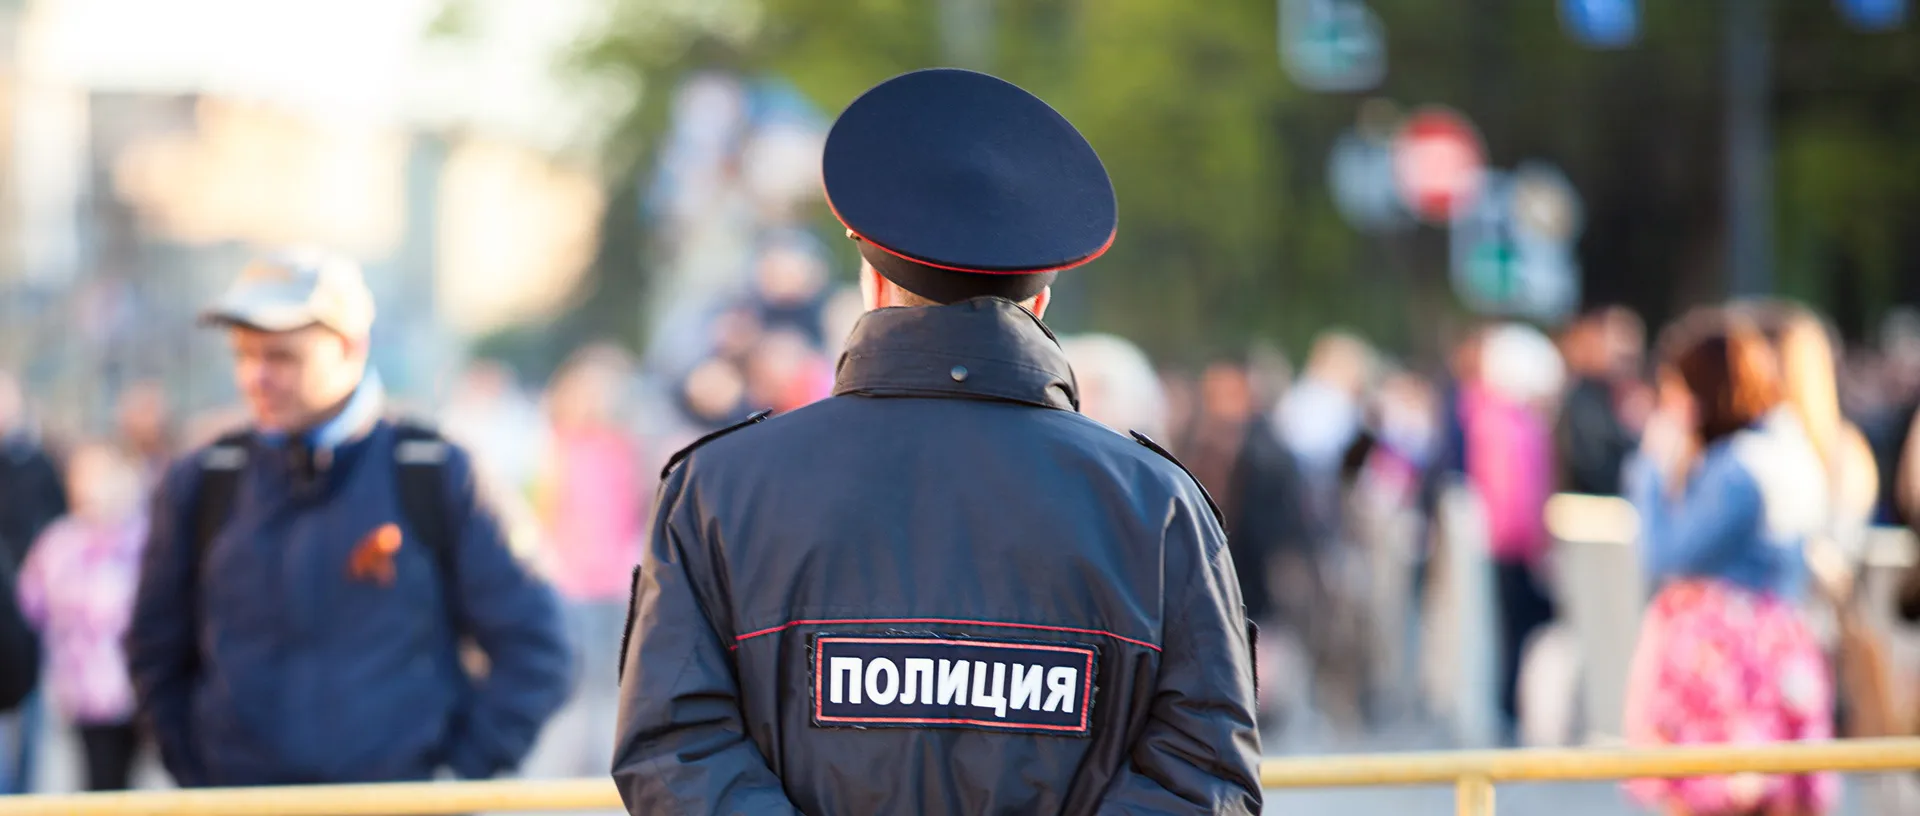 Ein russischer Polizist steht vor einer Absperrung